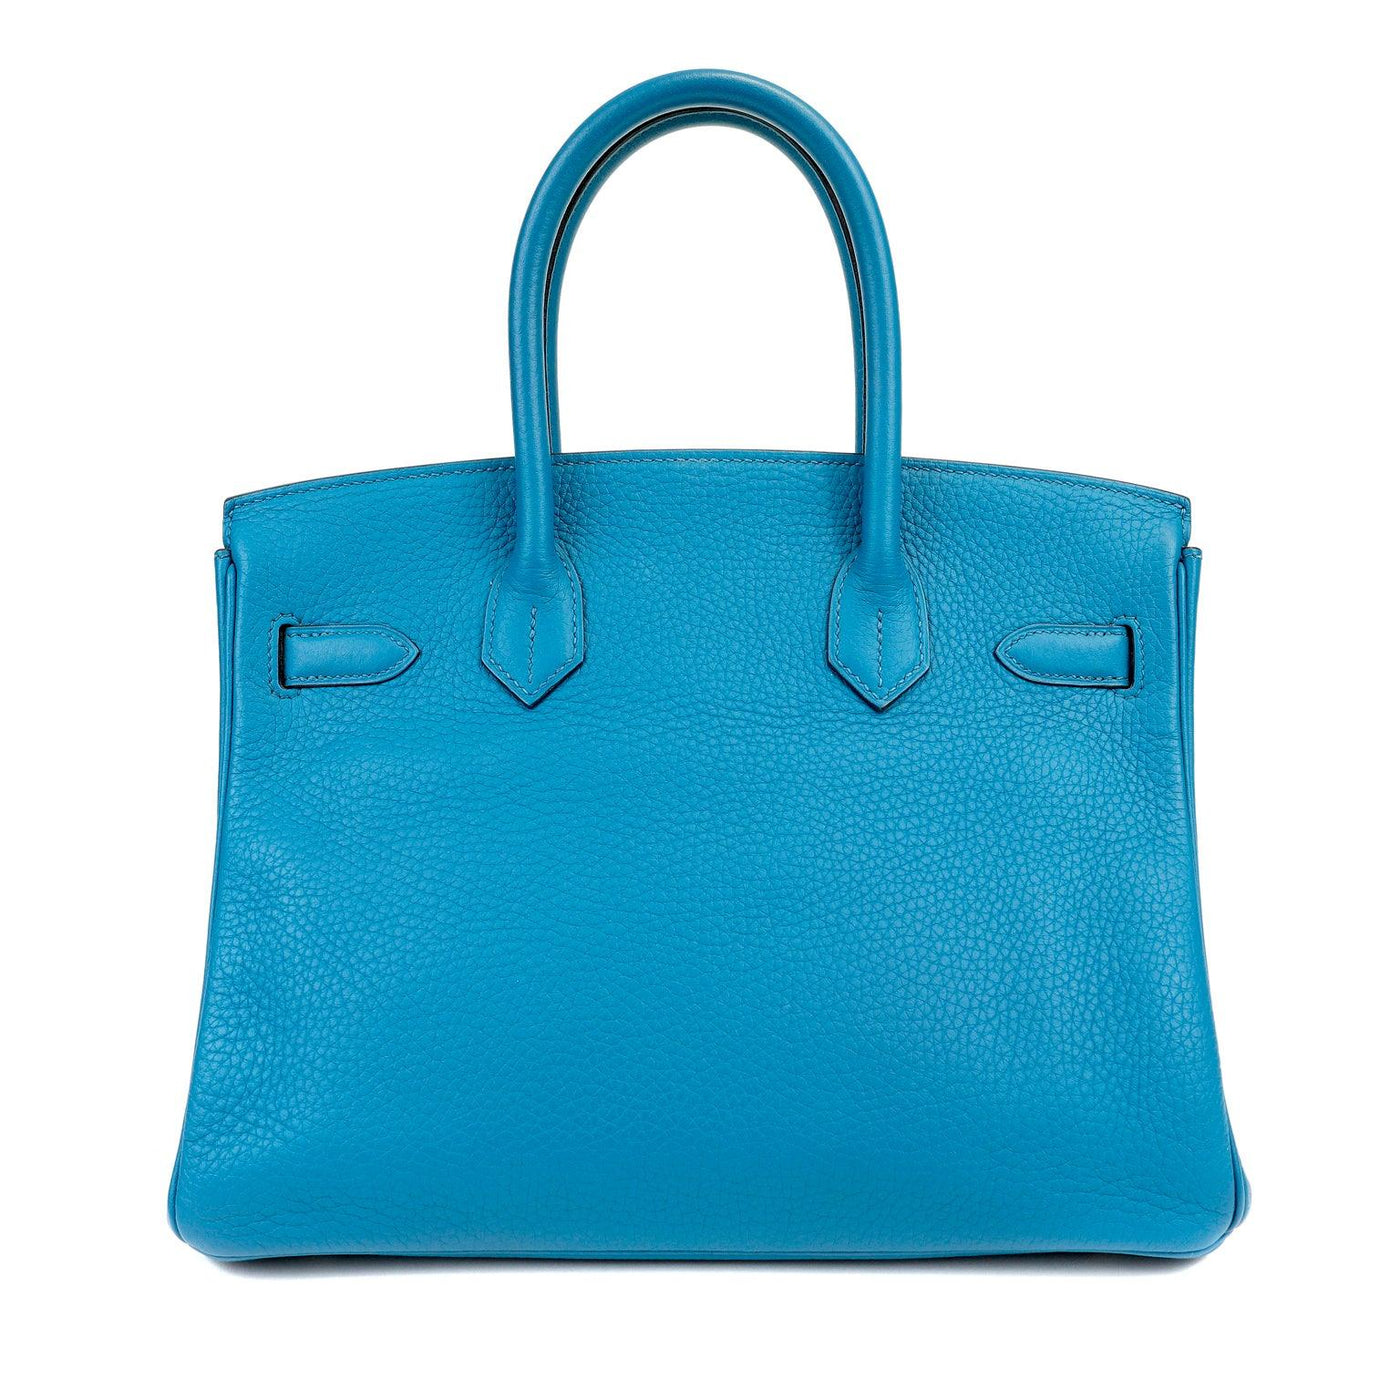 Hermès 30cm Blue Turquoise Togo Birkin with Palladium - Only Authentics